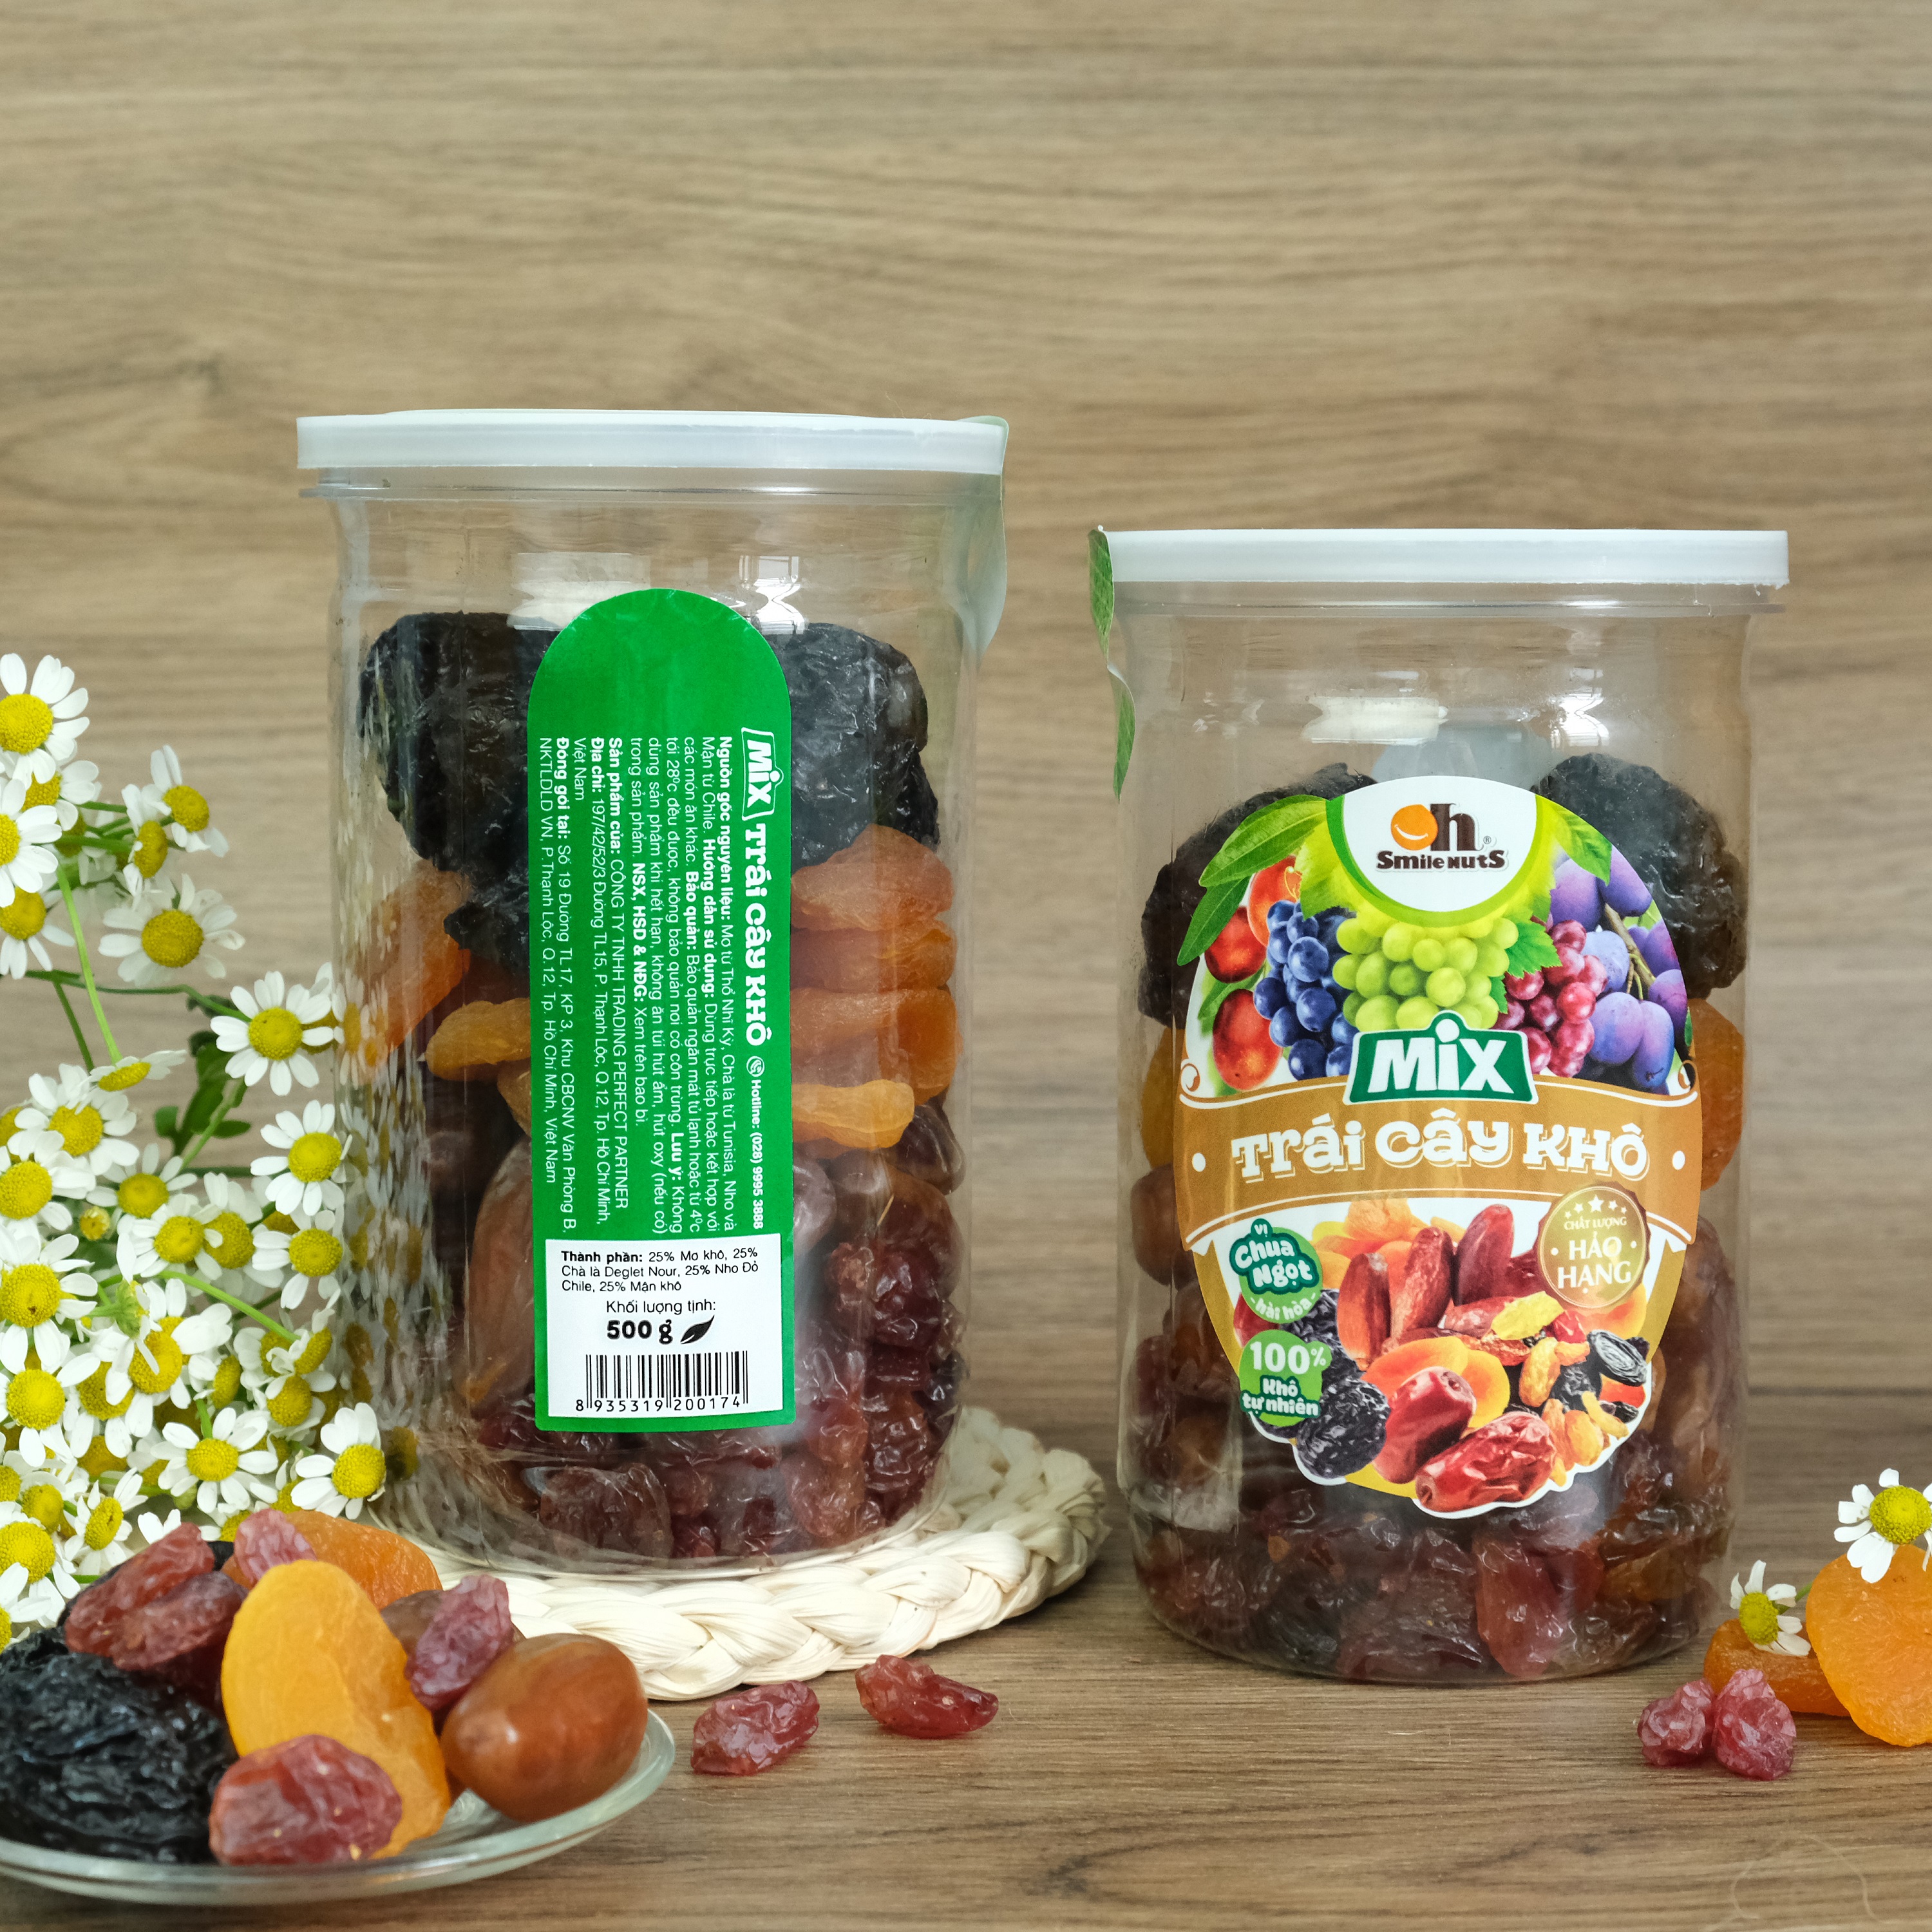 Mix Trái Cây Khô Smile Nuts (275g - 500g) | Gồm Chà Là từ Tunisia, Mận Khô và Nho Khô Đỏ từ Chile, Mơ Sấy từ Thổ Nhĩ Kỳ) - Mixed Dried Fruits (Dates, Prunes, Red Raisins and Apricots)